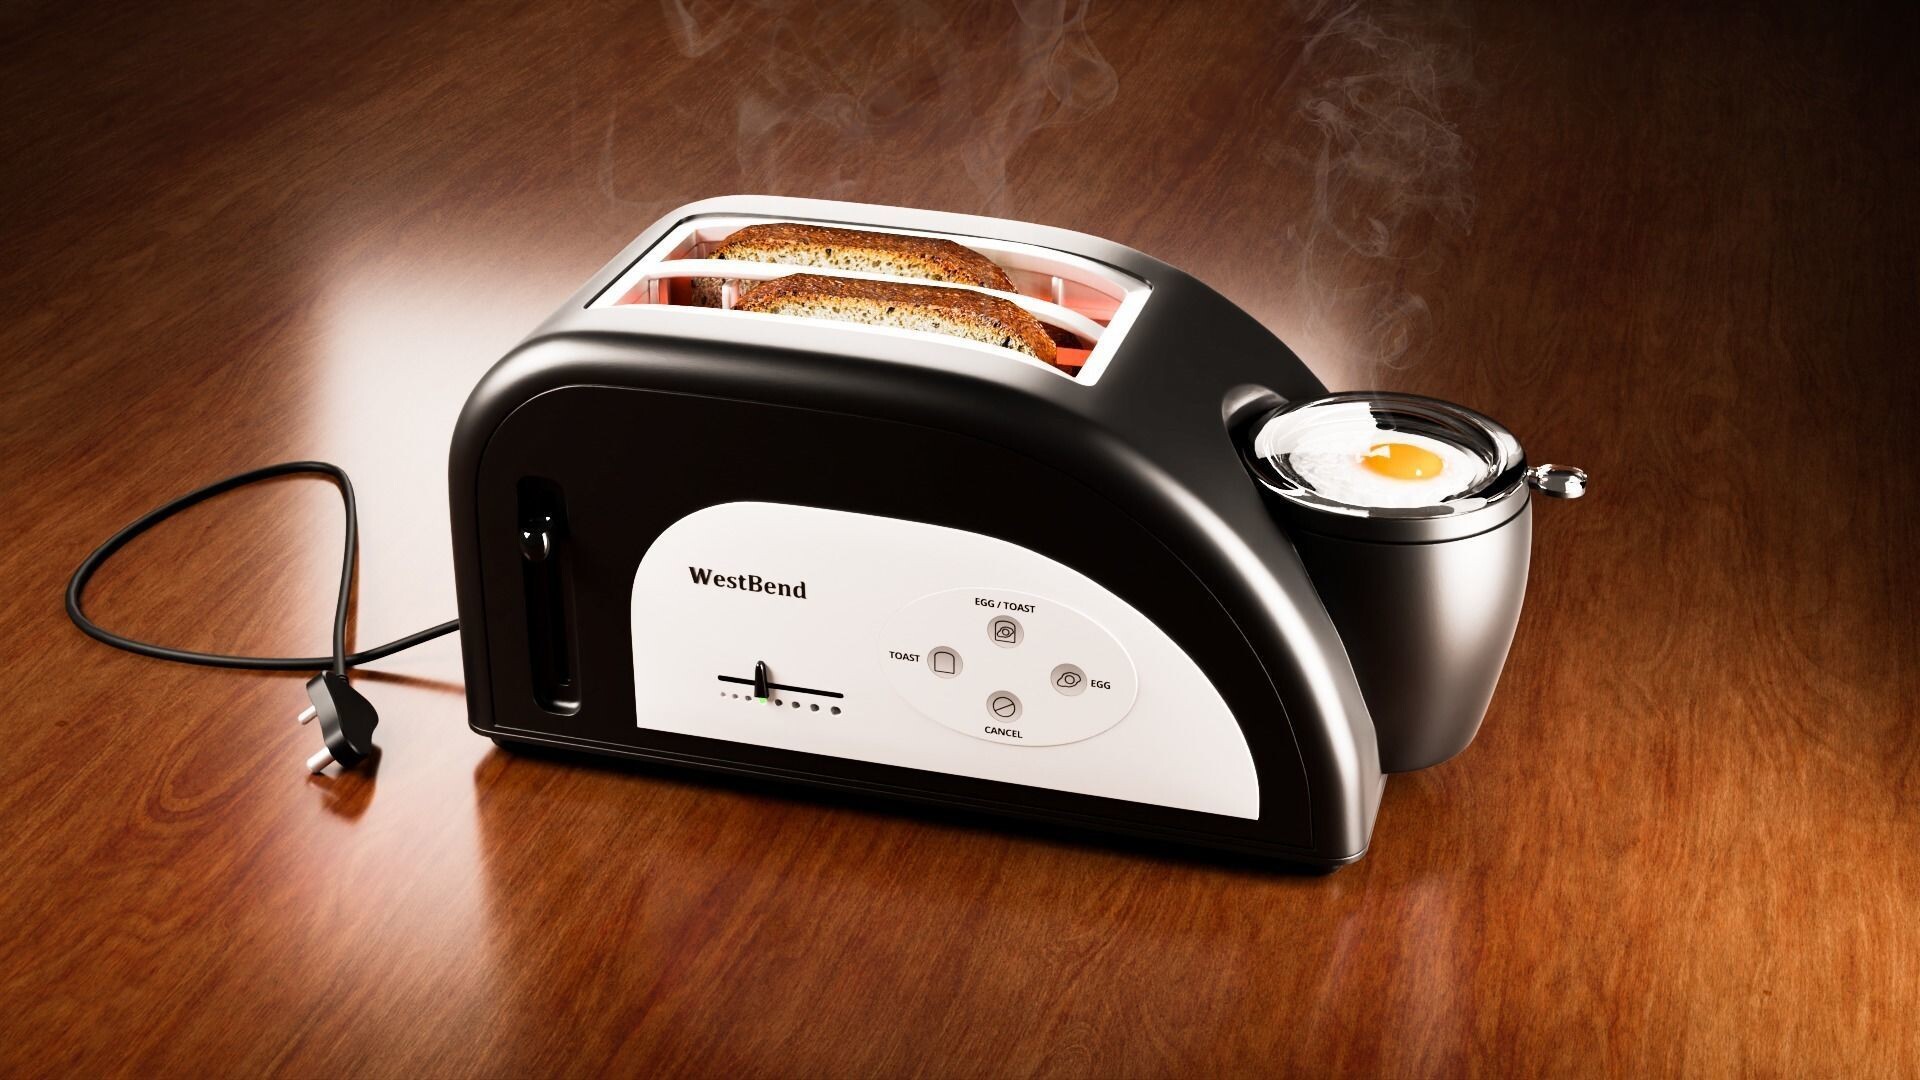 https://cdna.artstation.com/p/assets/images/images/054/985/664/large/vishal-saini-west-bend-toaster-with-egg-cooker-3d-model.jpg?1665841157